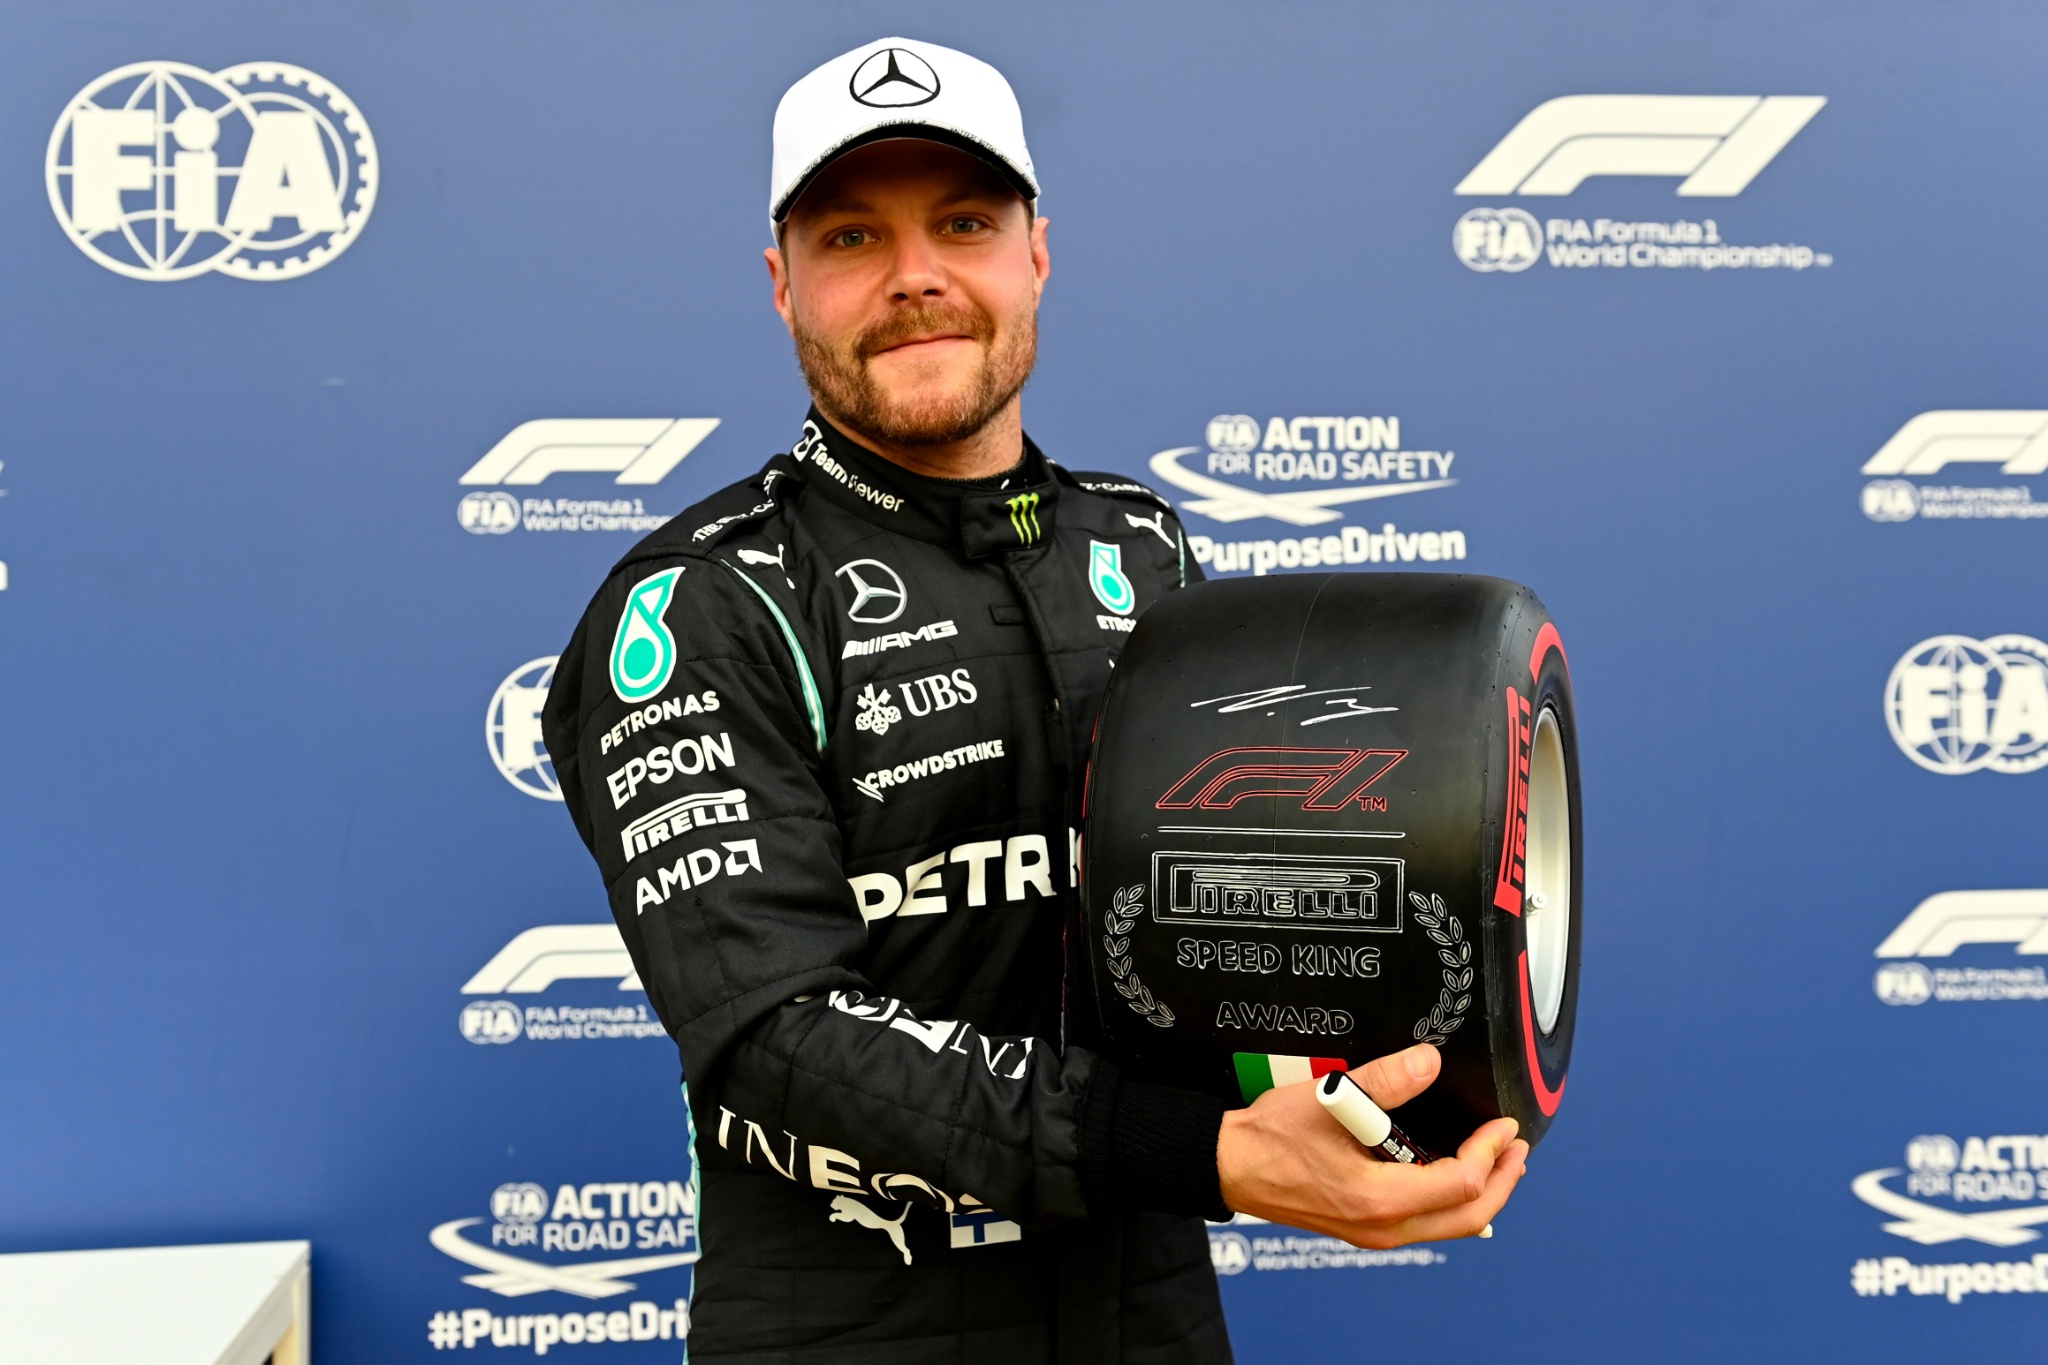 Valtteri Bottas (FIN) ) Mercedes AMG F1 merayakan menjadi yang tercepat di parc ferme kualifikasi dengan Pirelli Speed King